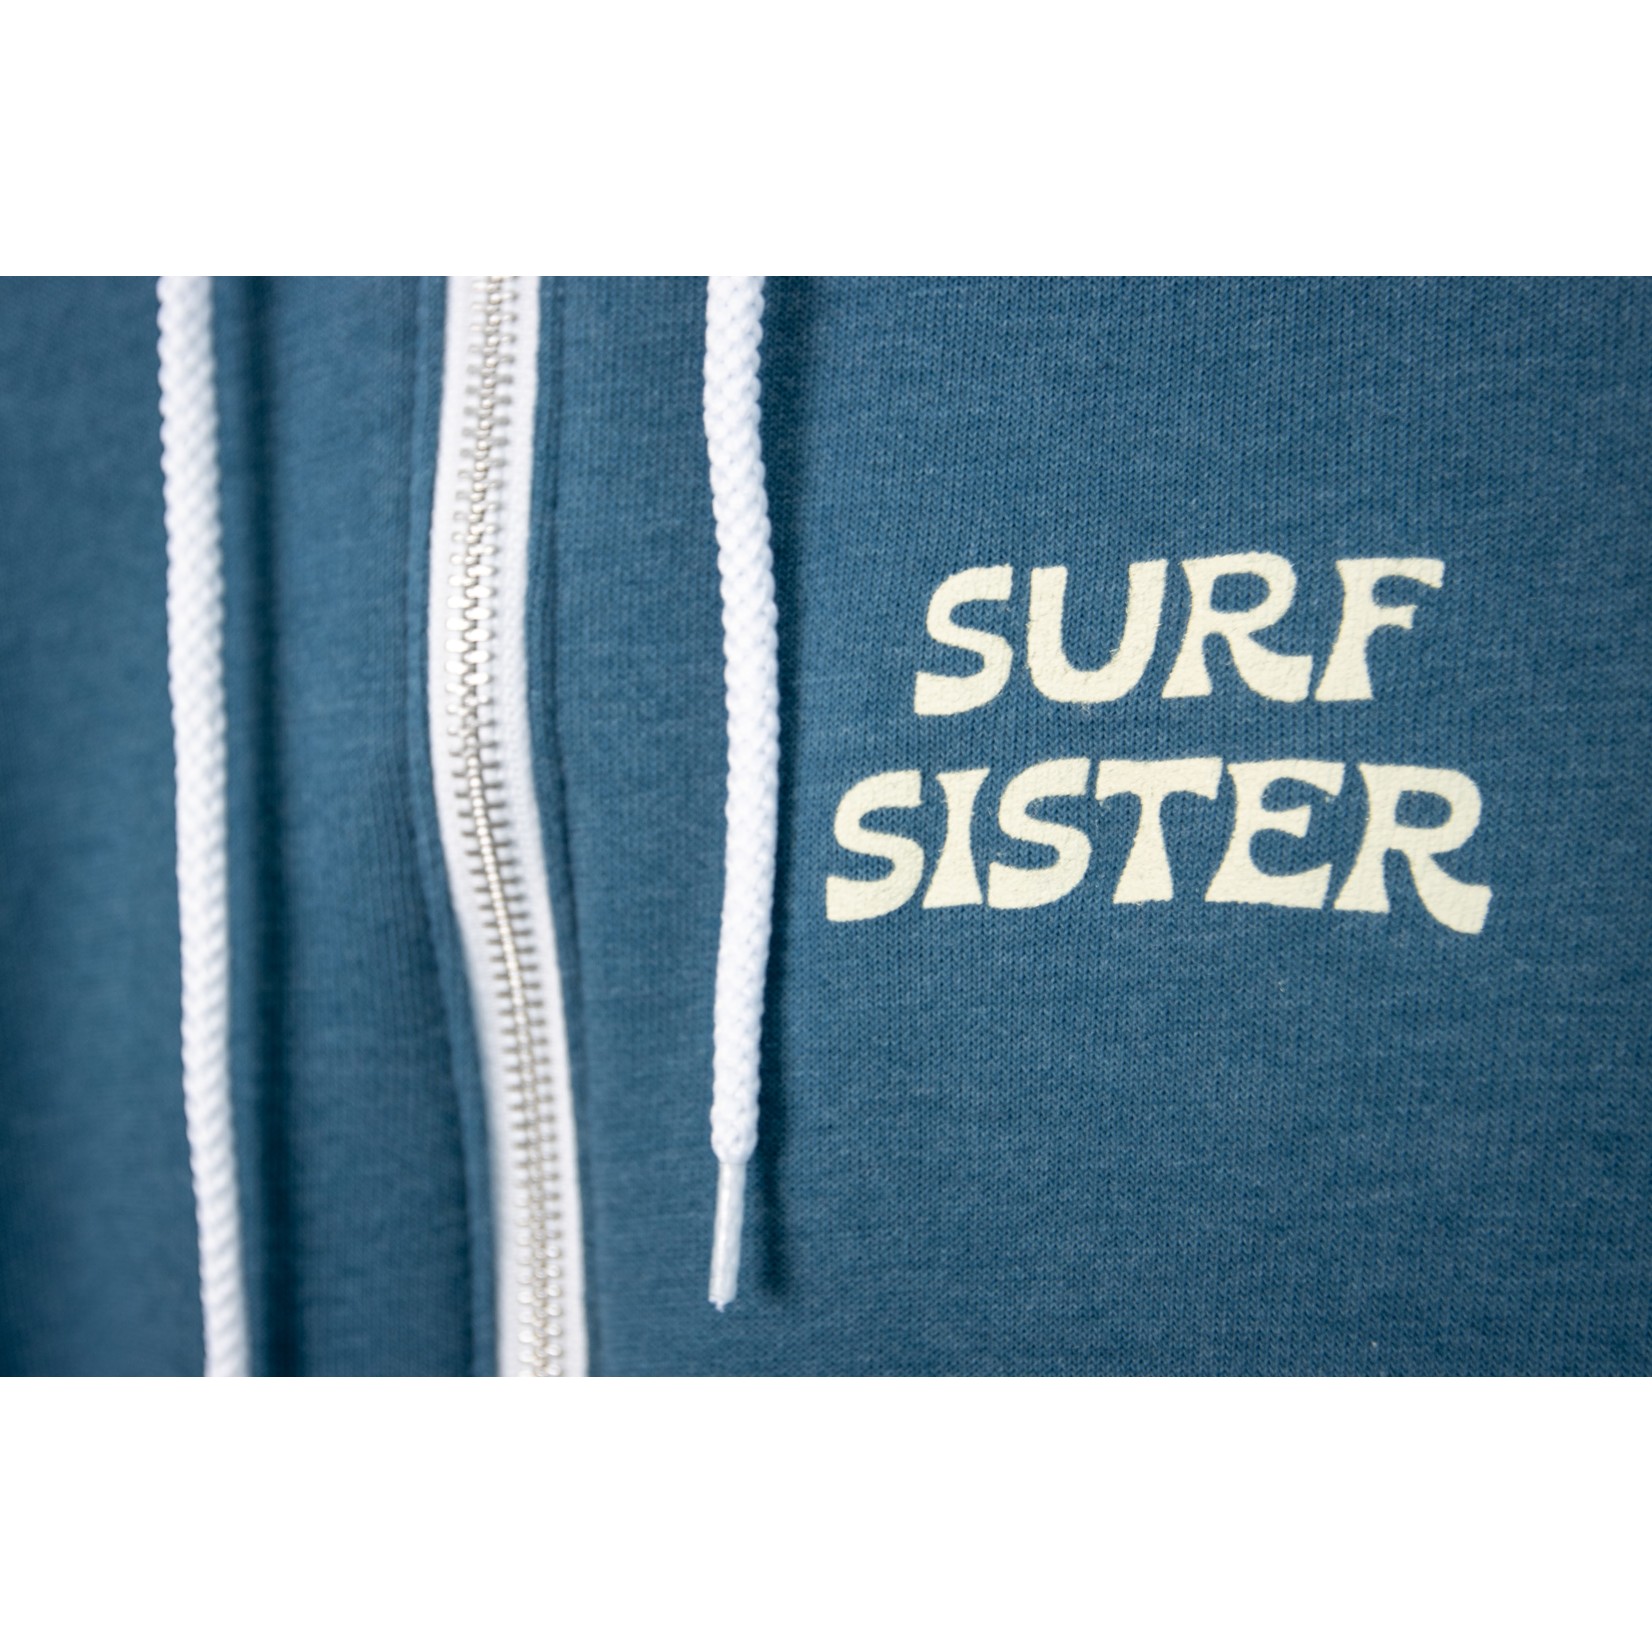 Surf Sister SURF SISTER UNISEX ZIP HOODIE